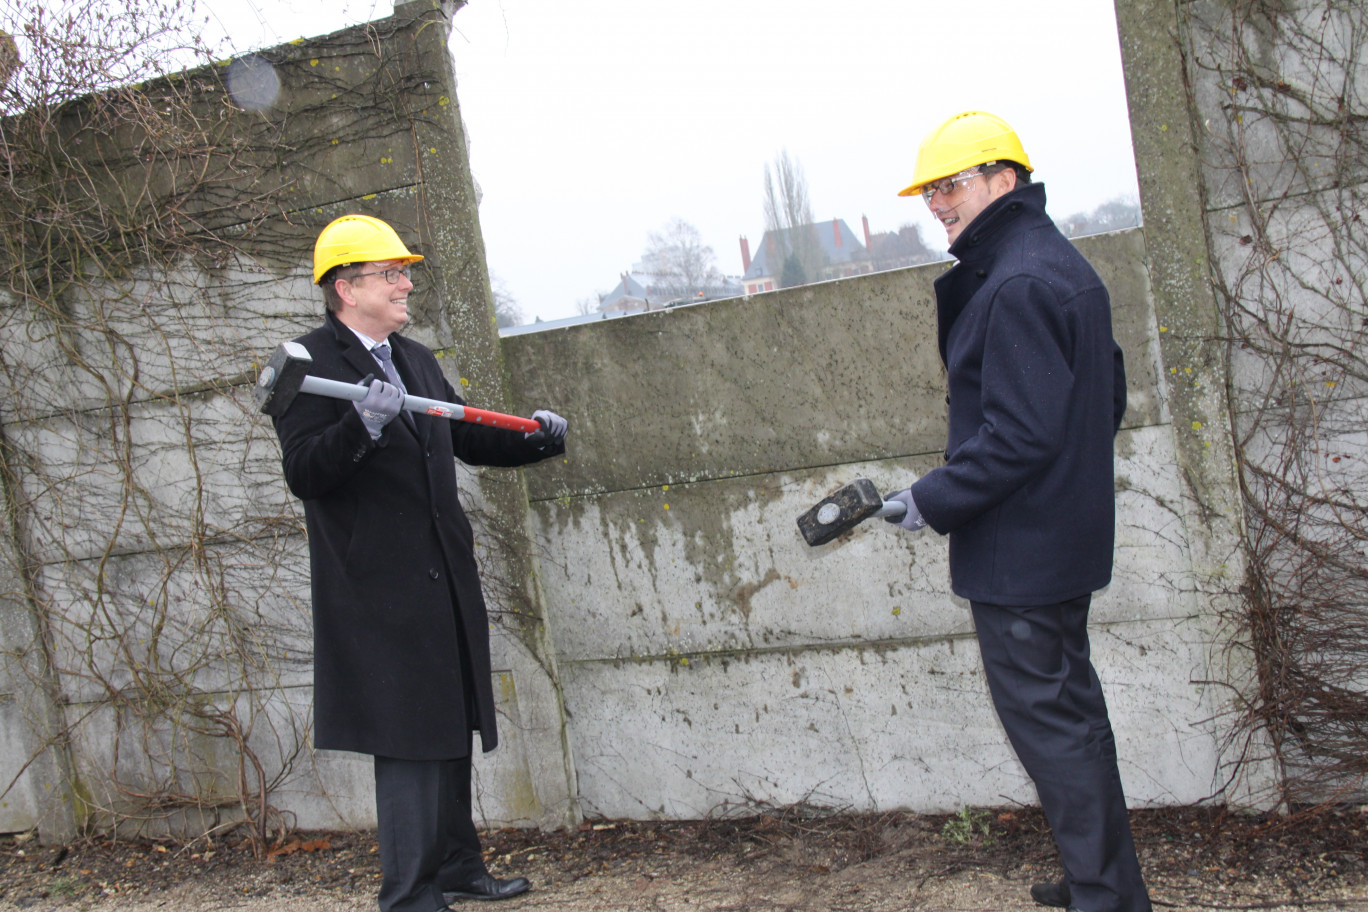 Philippe Rapeneau, président de la Communauté urbaine d’Arras, et Frédéric Leturque, maire d’Arras, s’apprêtent symboliquement à faire tomber la palissade qui masque la vue de la Citadelle vers la ville d’Arras.